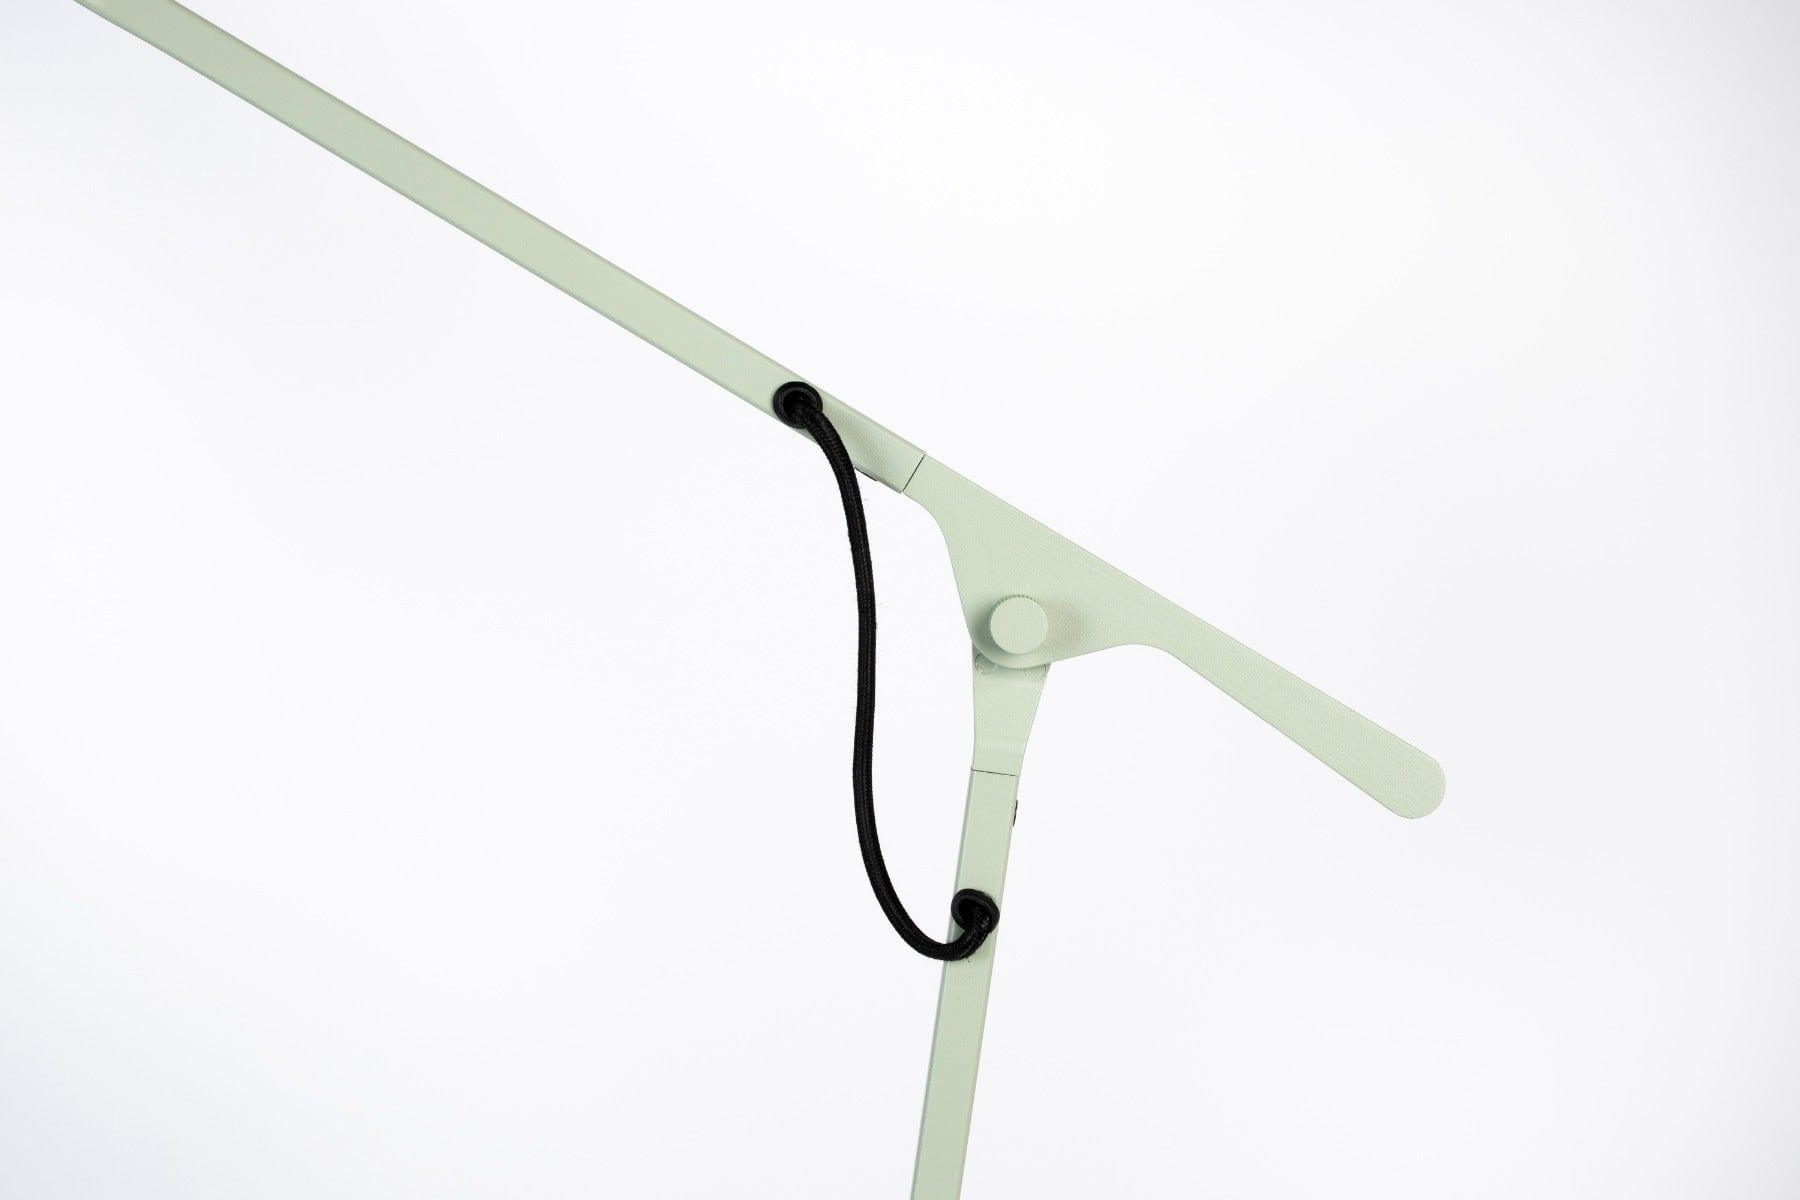 Lampa podłogowa LAU zielony Zuiver    Eye on Design